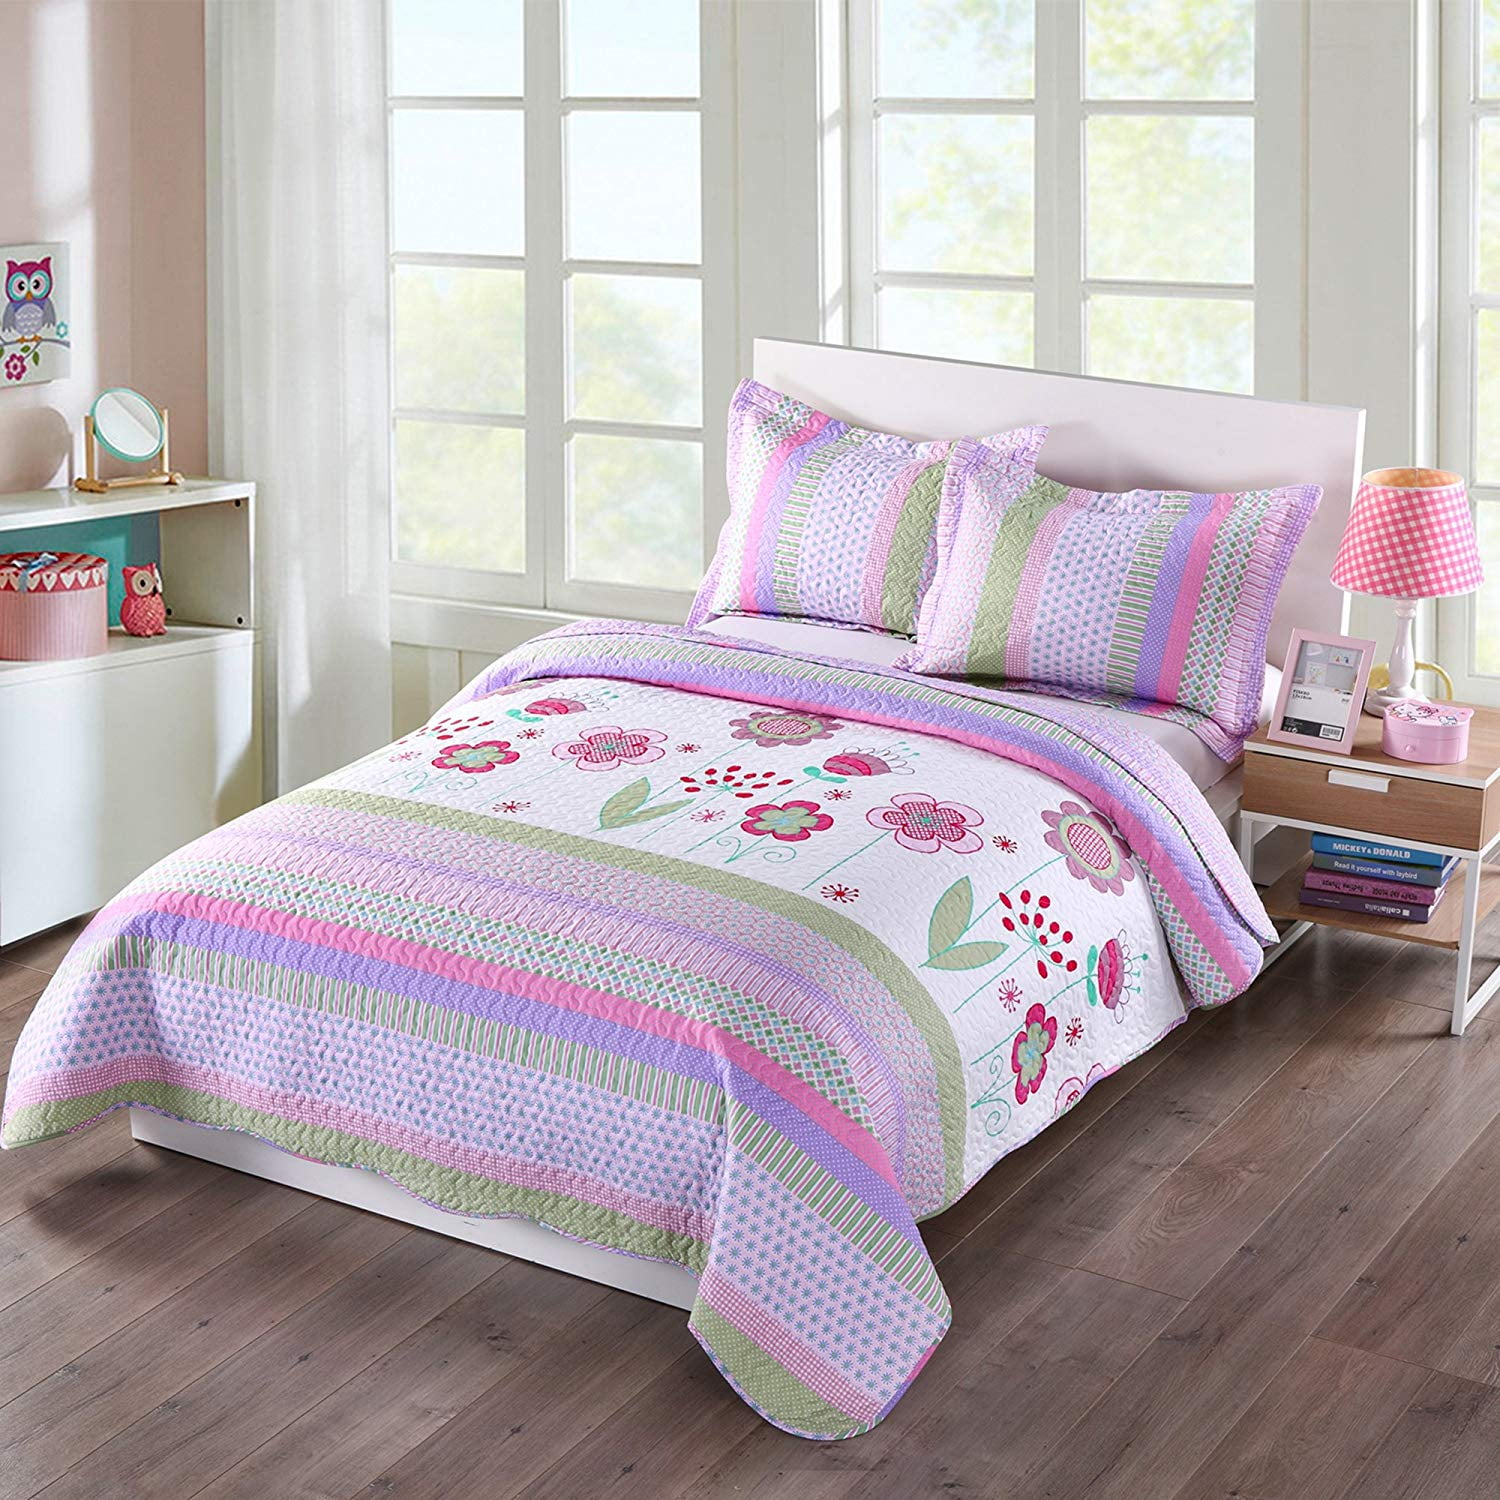 大人気☆ (Twin) MarCielo Piece Kids Bedspread Quilts Set Throw Blanket for  Teens Girls Bed Printed Bedding Coverlet, Twin Size, Purple Floral（並行輸入品） 